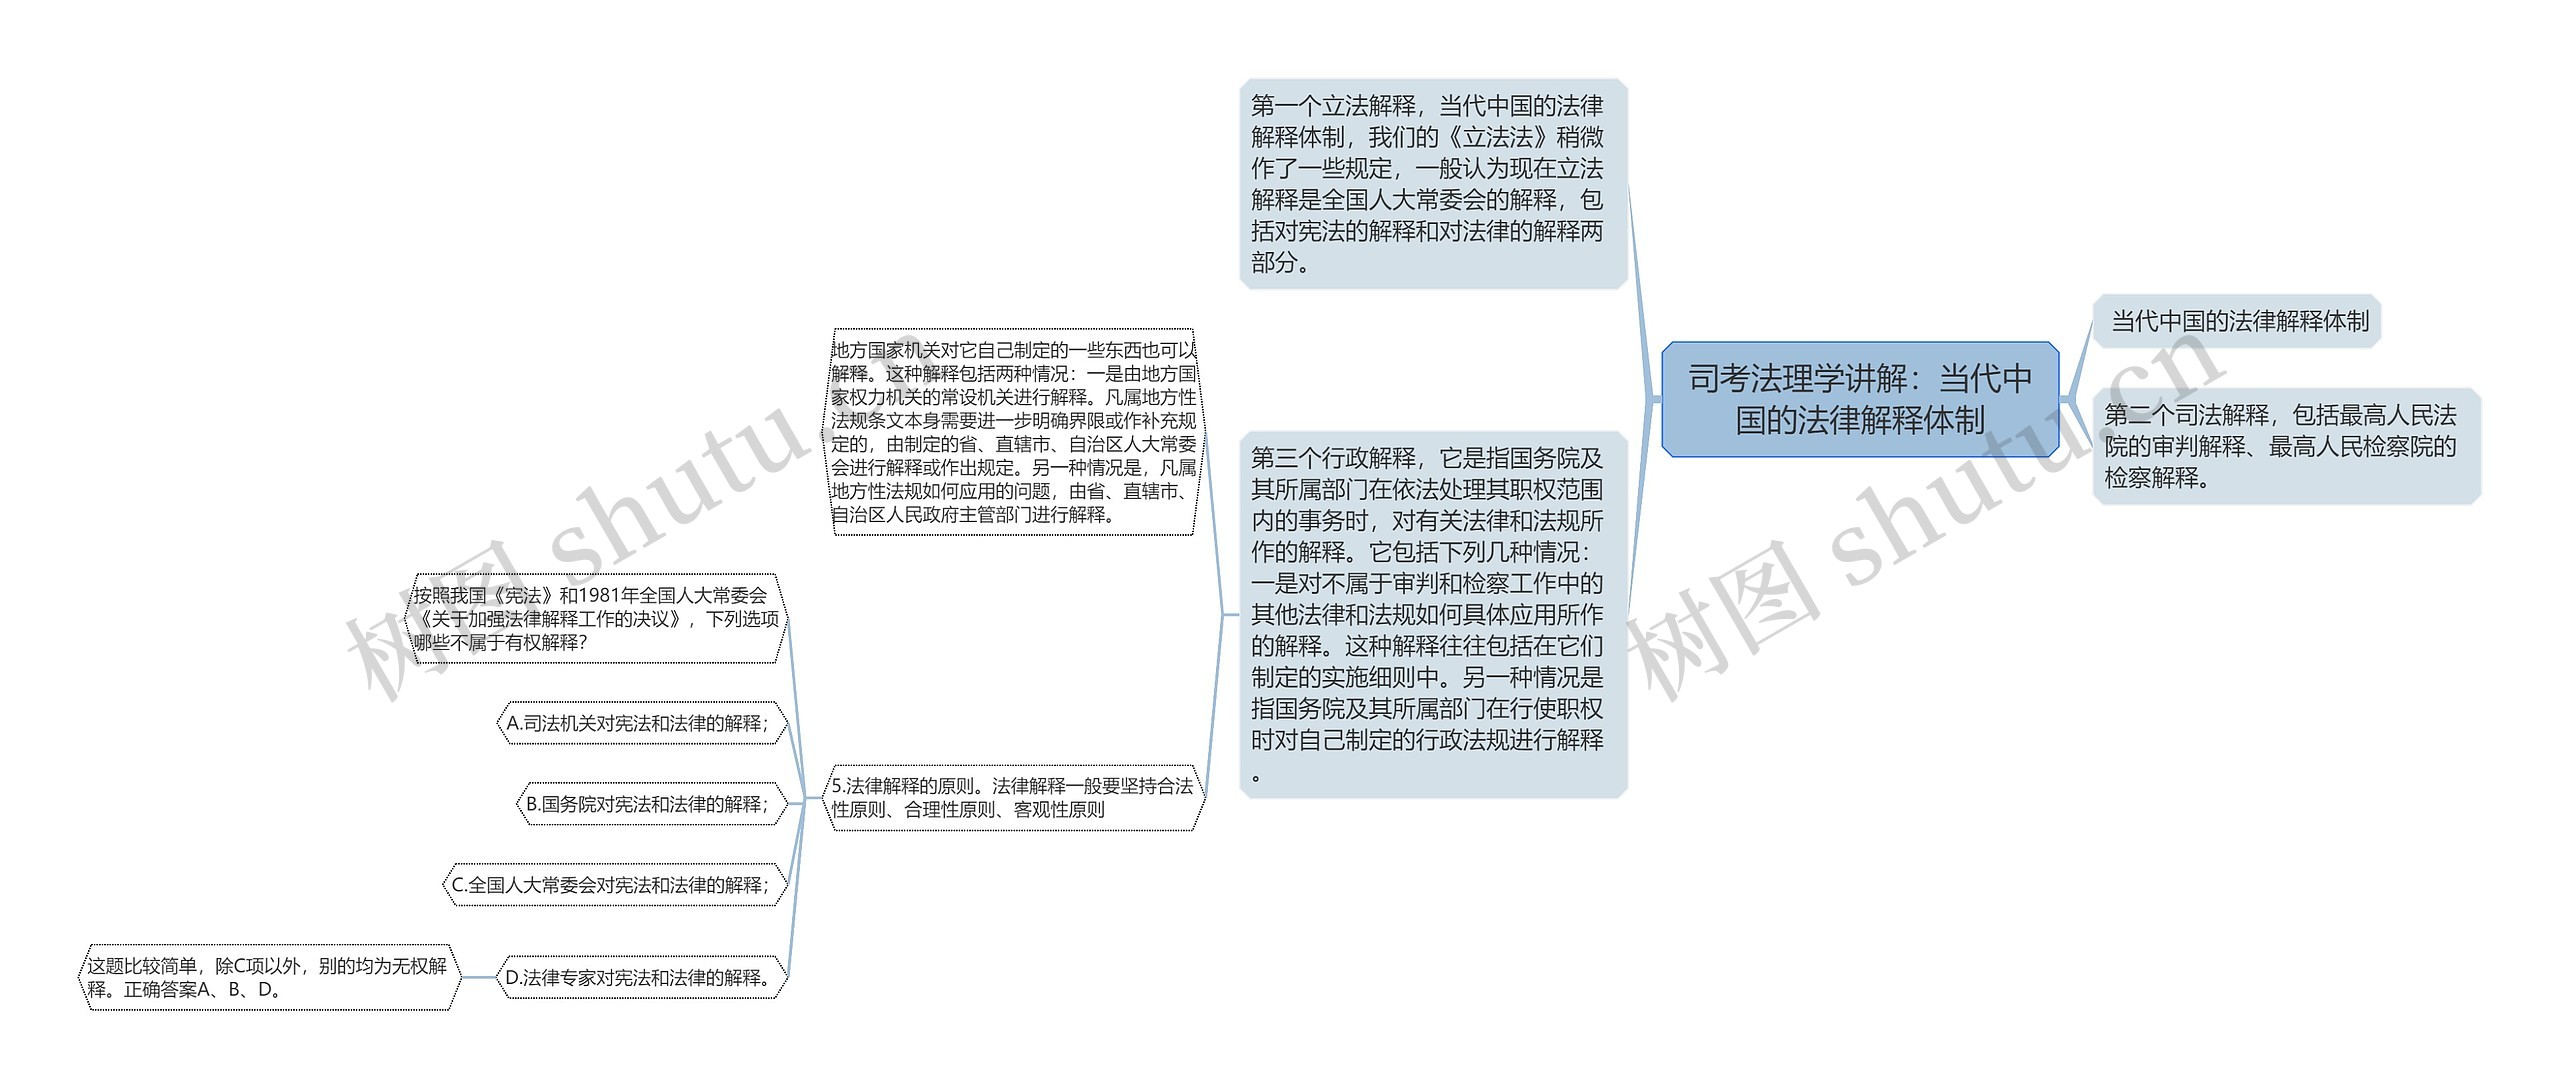 司考法理学讲解：当代中国的法律解释体制思维导图